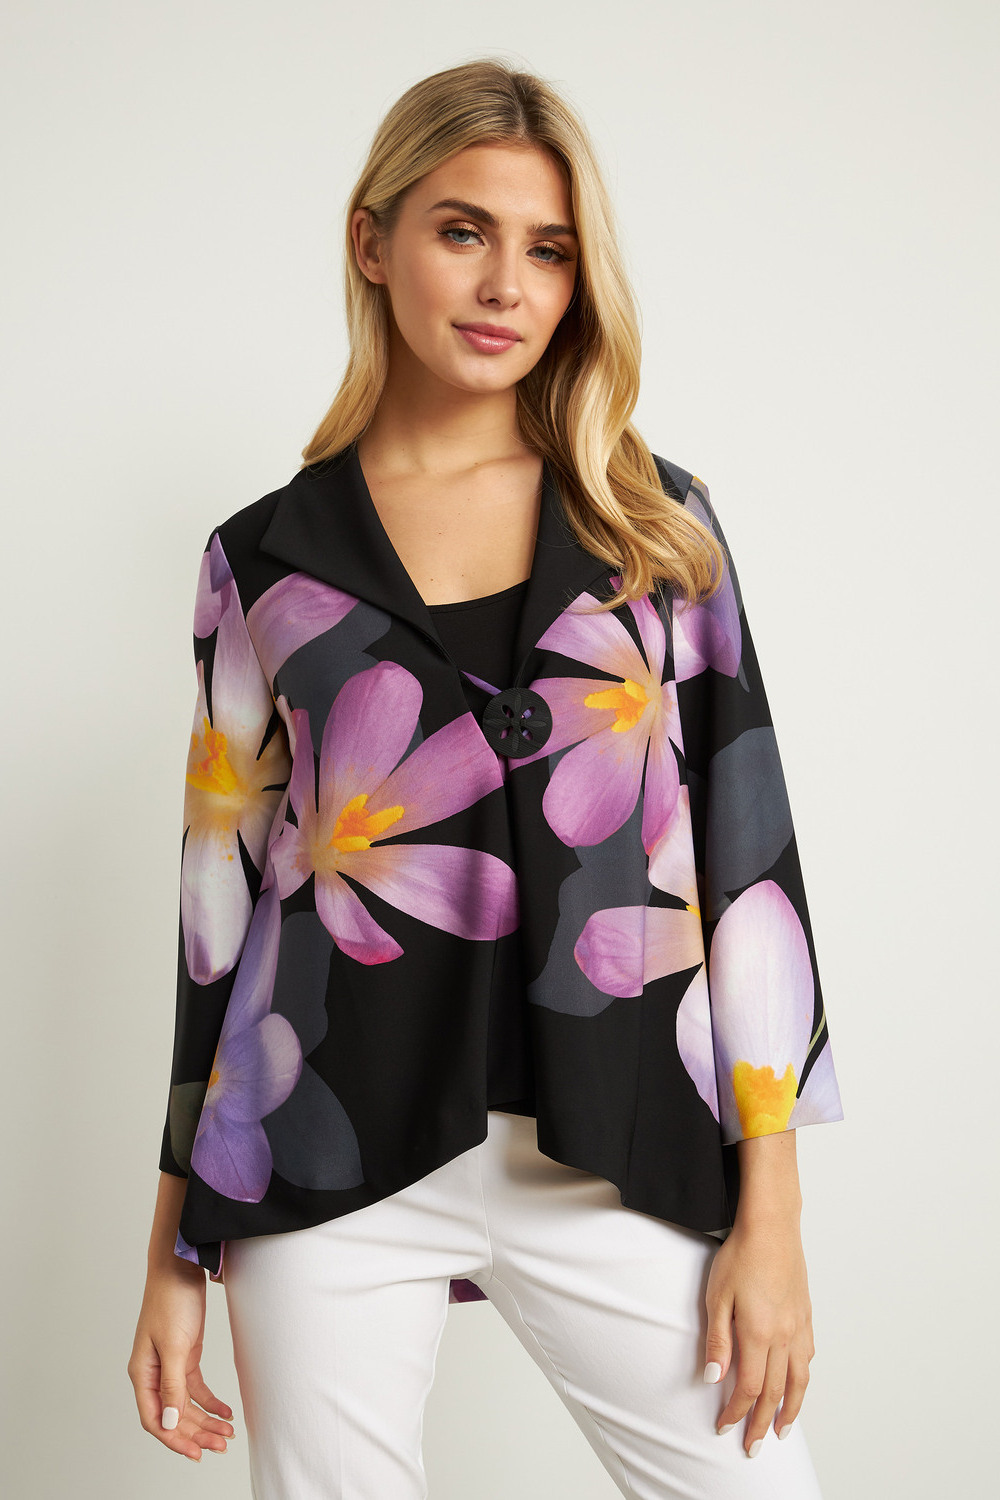 Joseph Ribkoff Floral 3/4 Sleeve Jacket Style 211395. Black/purple/multi